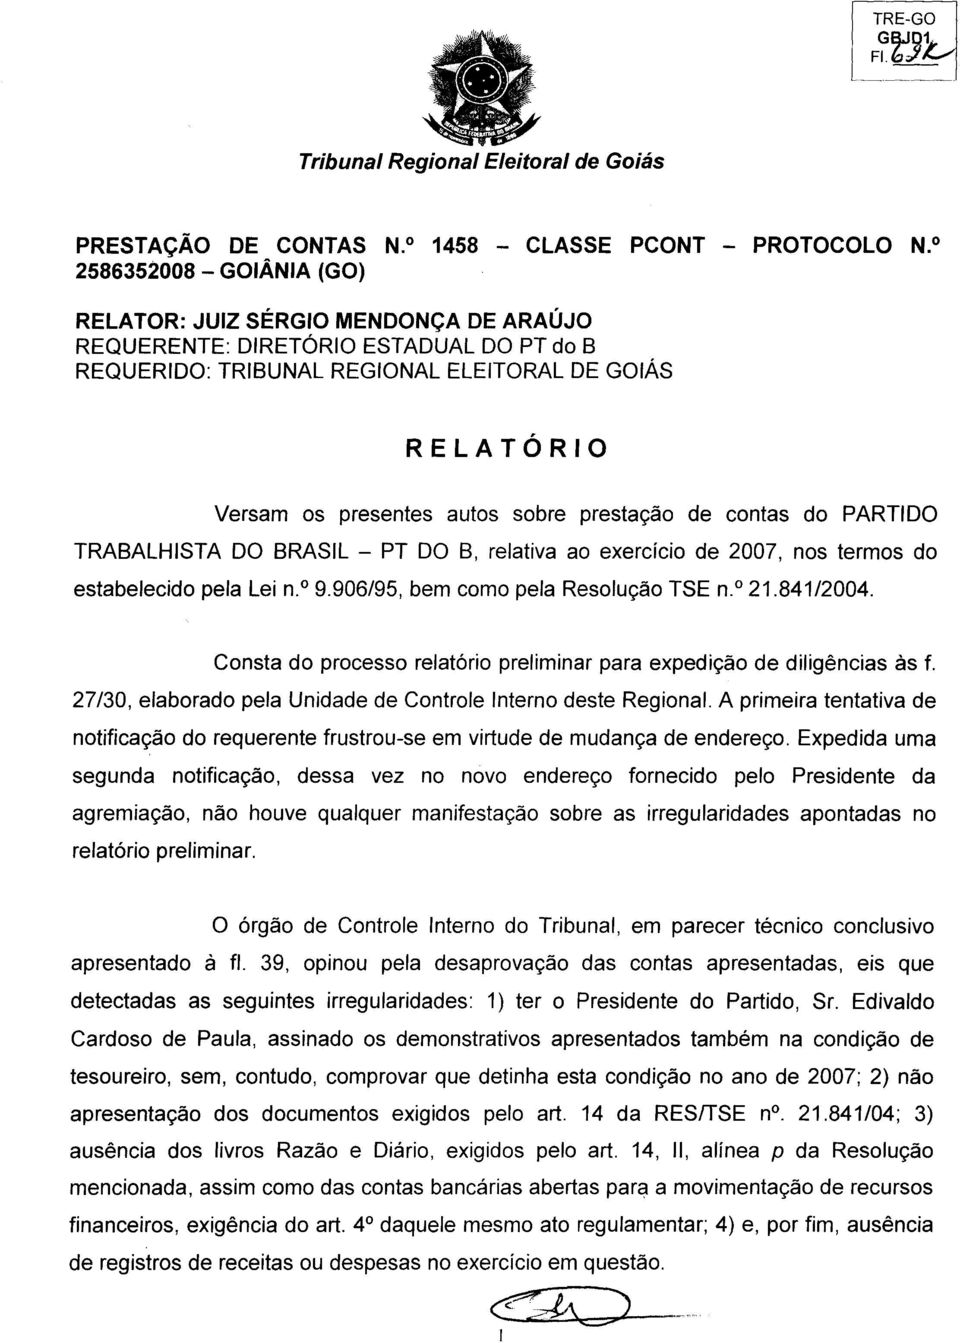 prestagao de contas do PARTIDO TRABALHISTA DO BRASIL PT DO B, relativa ao exercicio de 2007, nos termos do estabelecido pela Lei n. 9.906/95, bem como pela ResoILO TSE n. 21.841/2004.